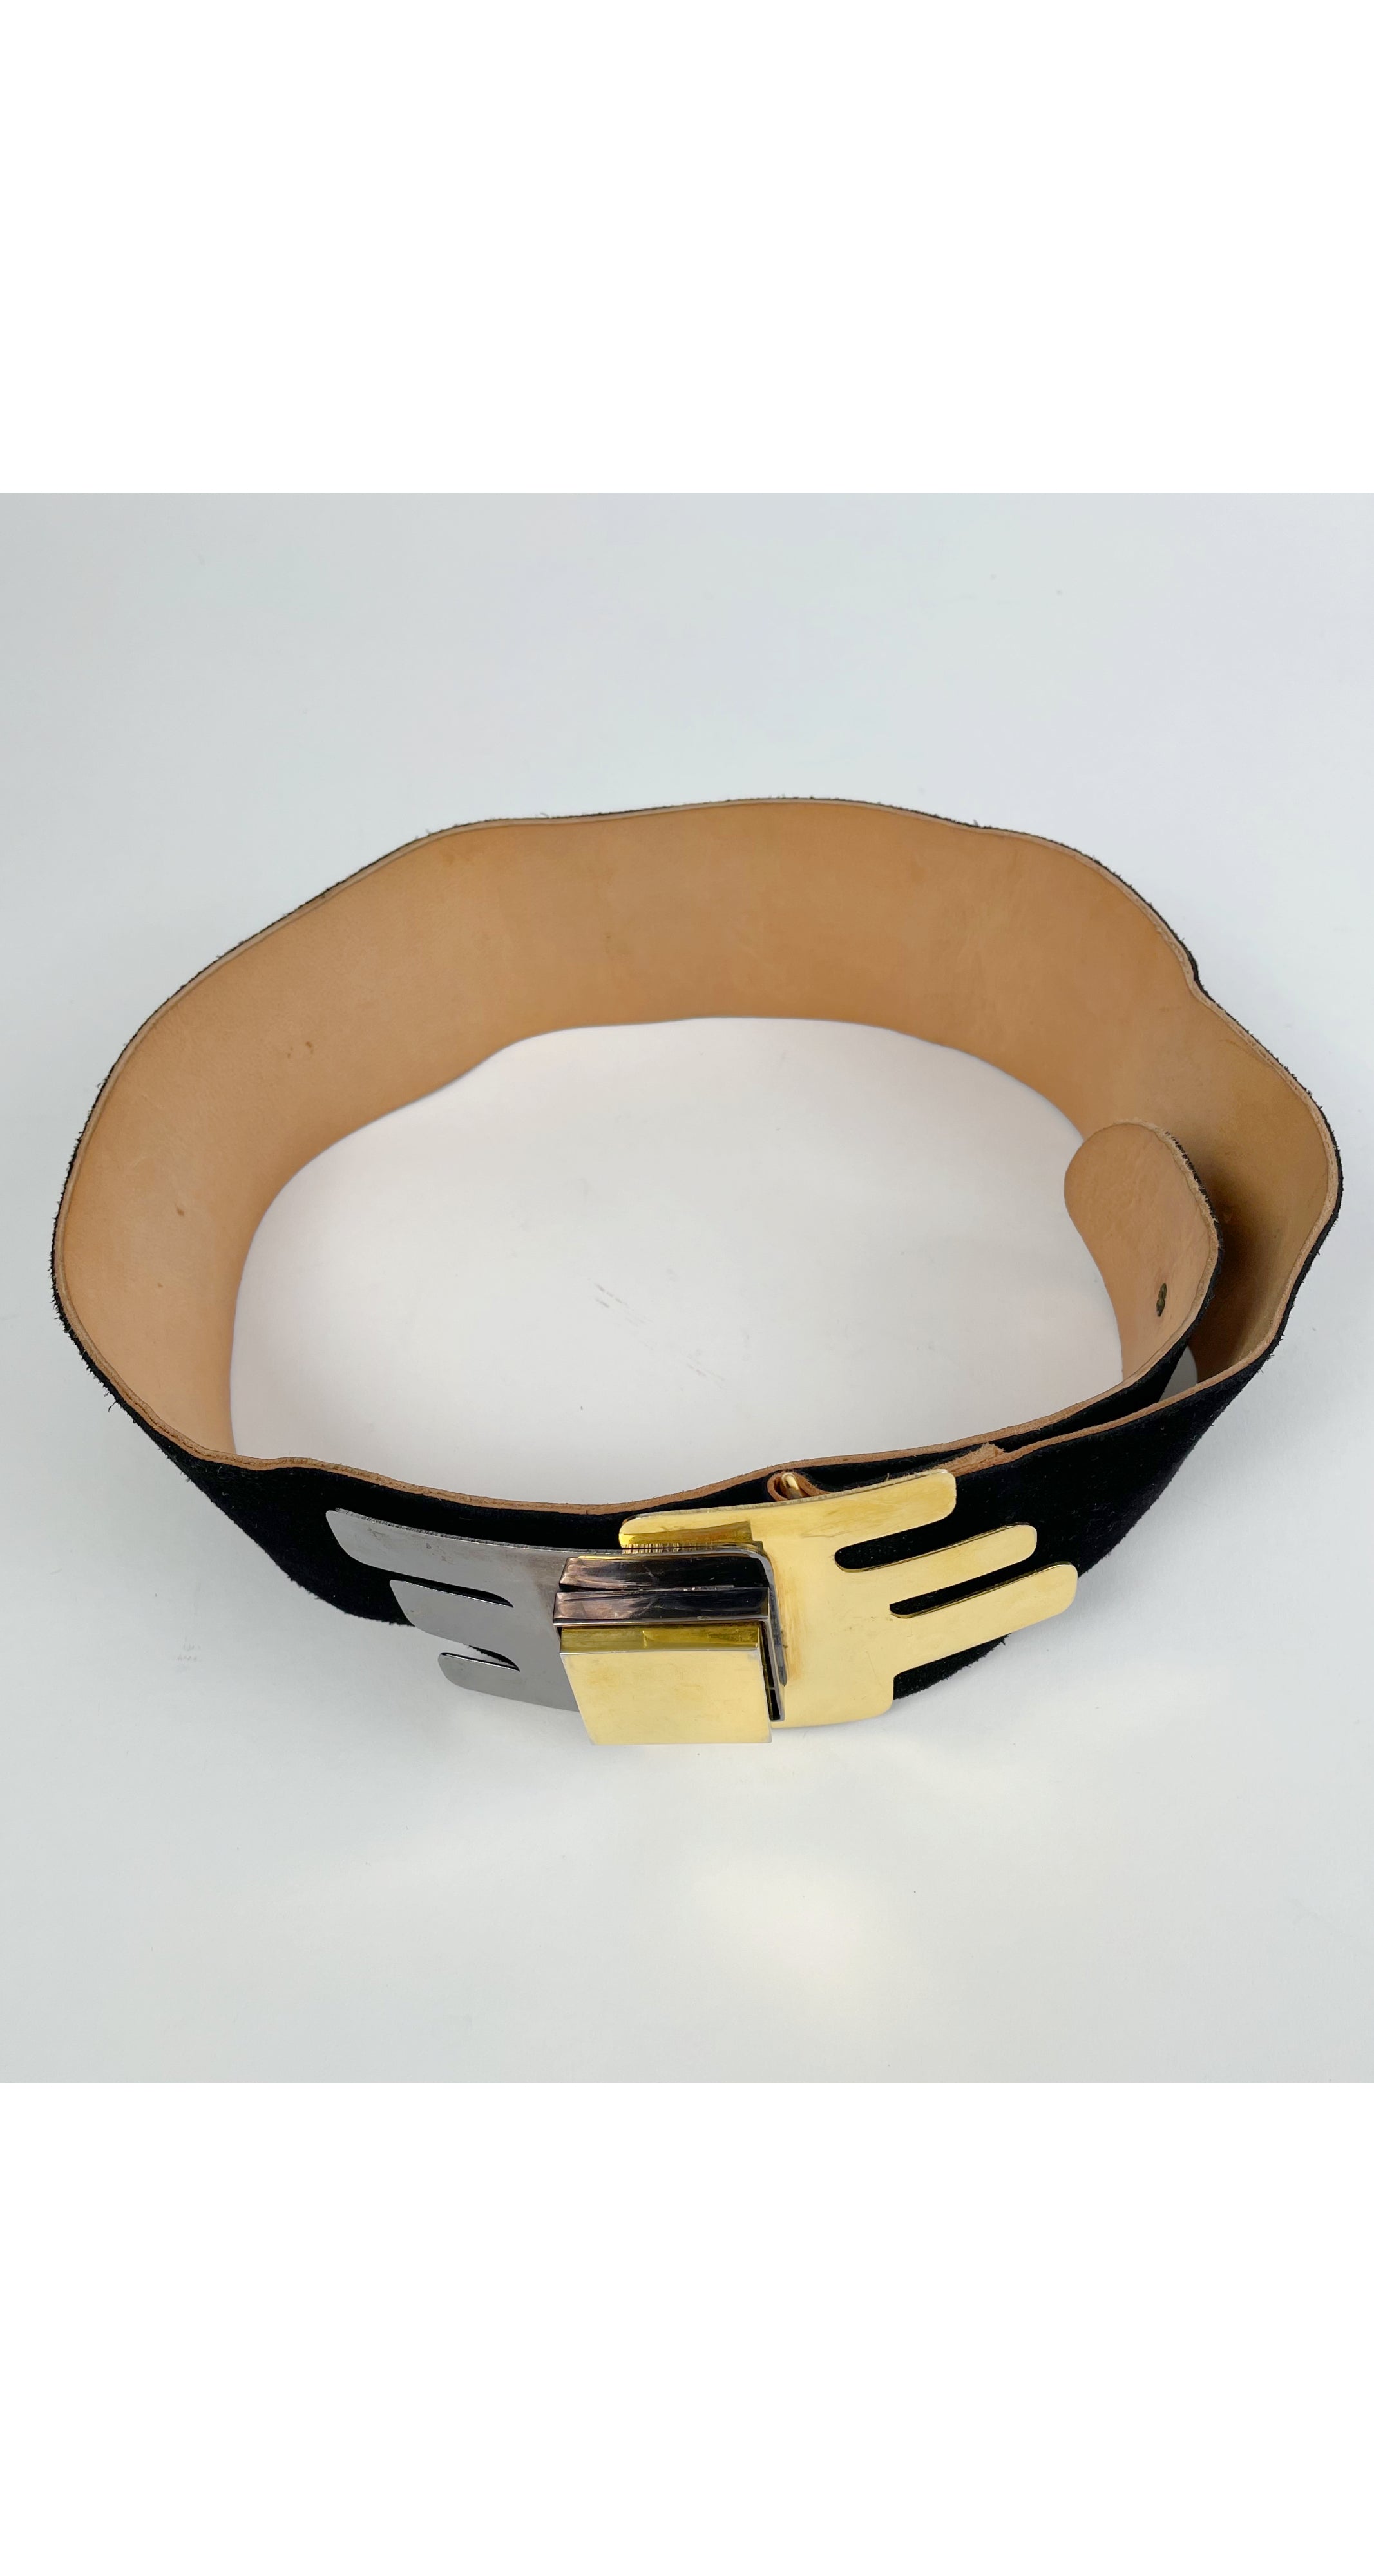 1970s Modernist Gold & Silver Black Suede Belt